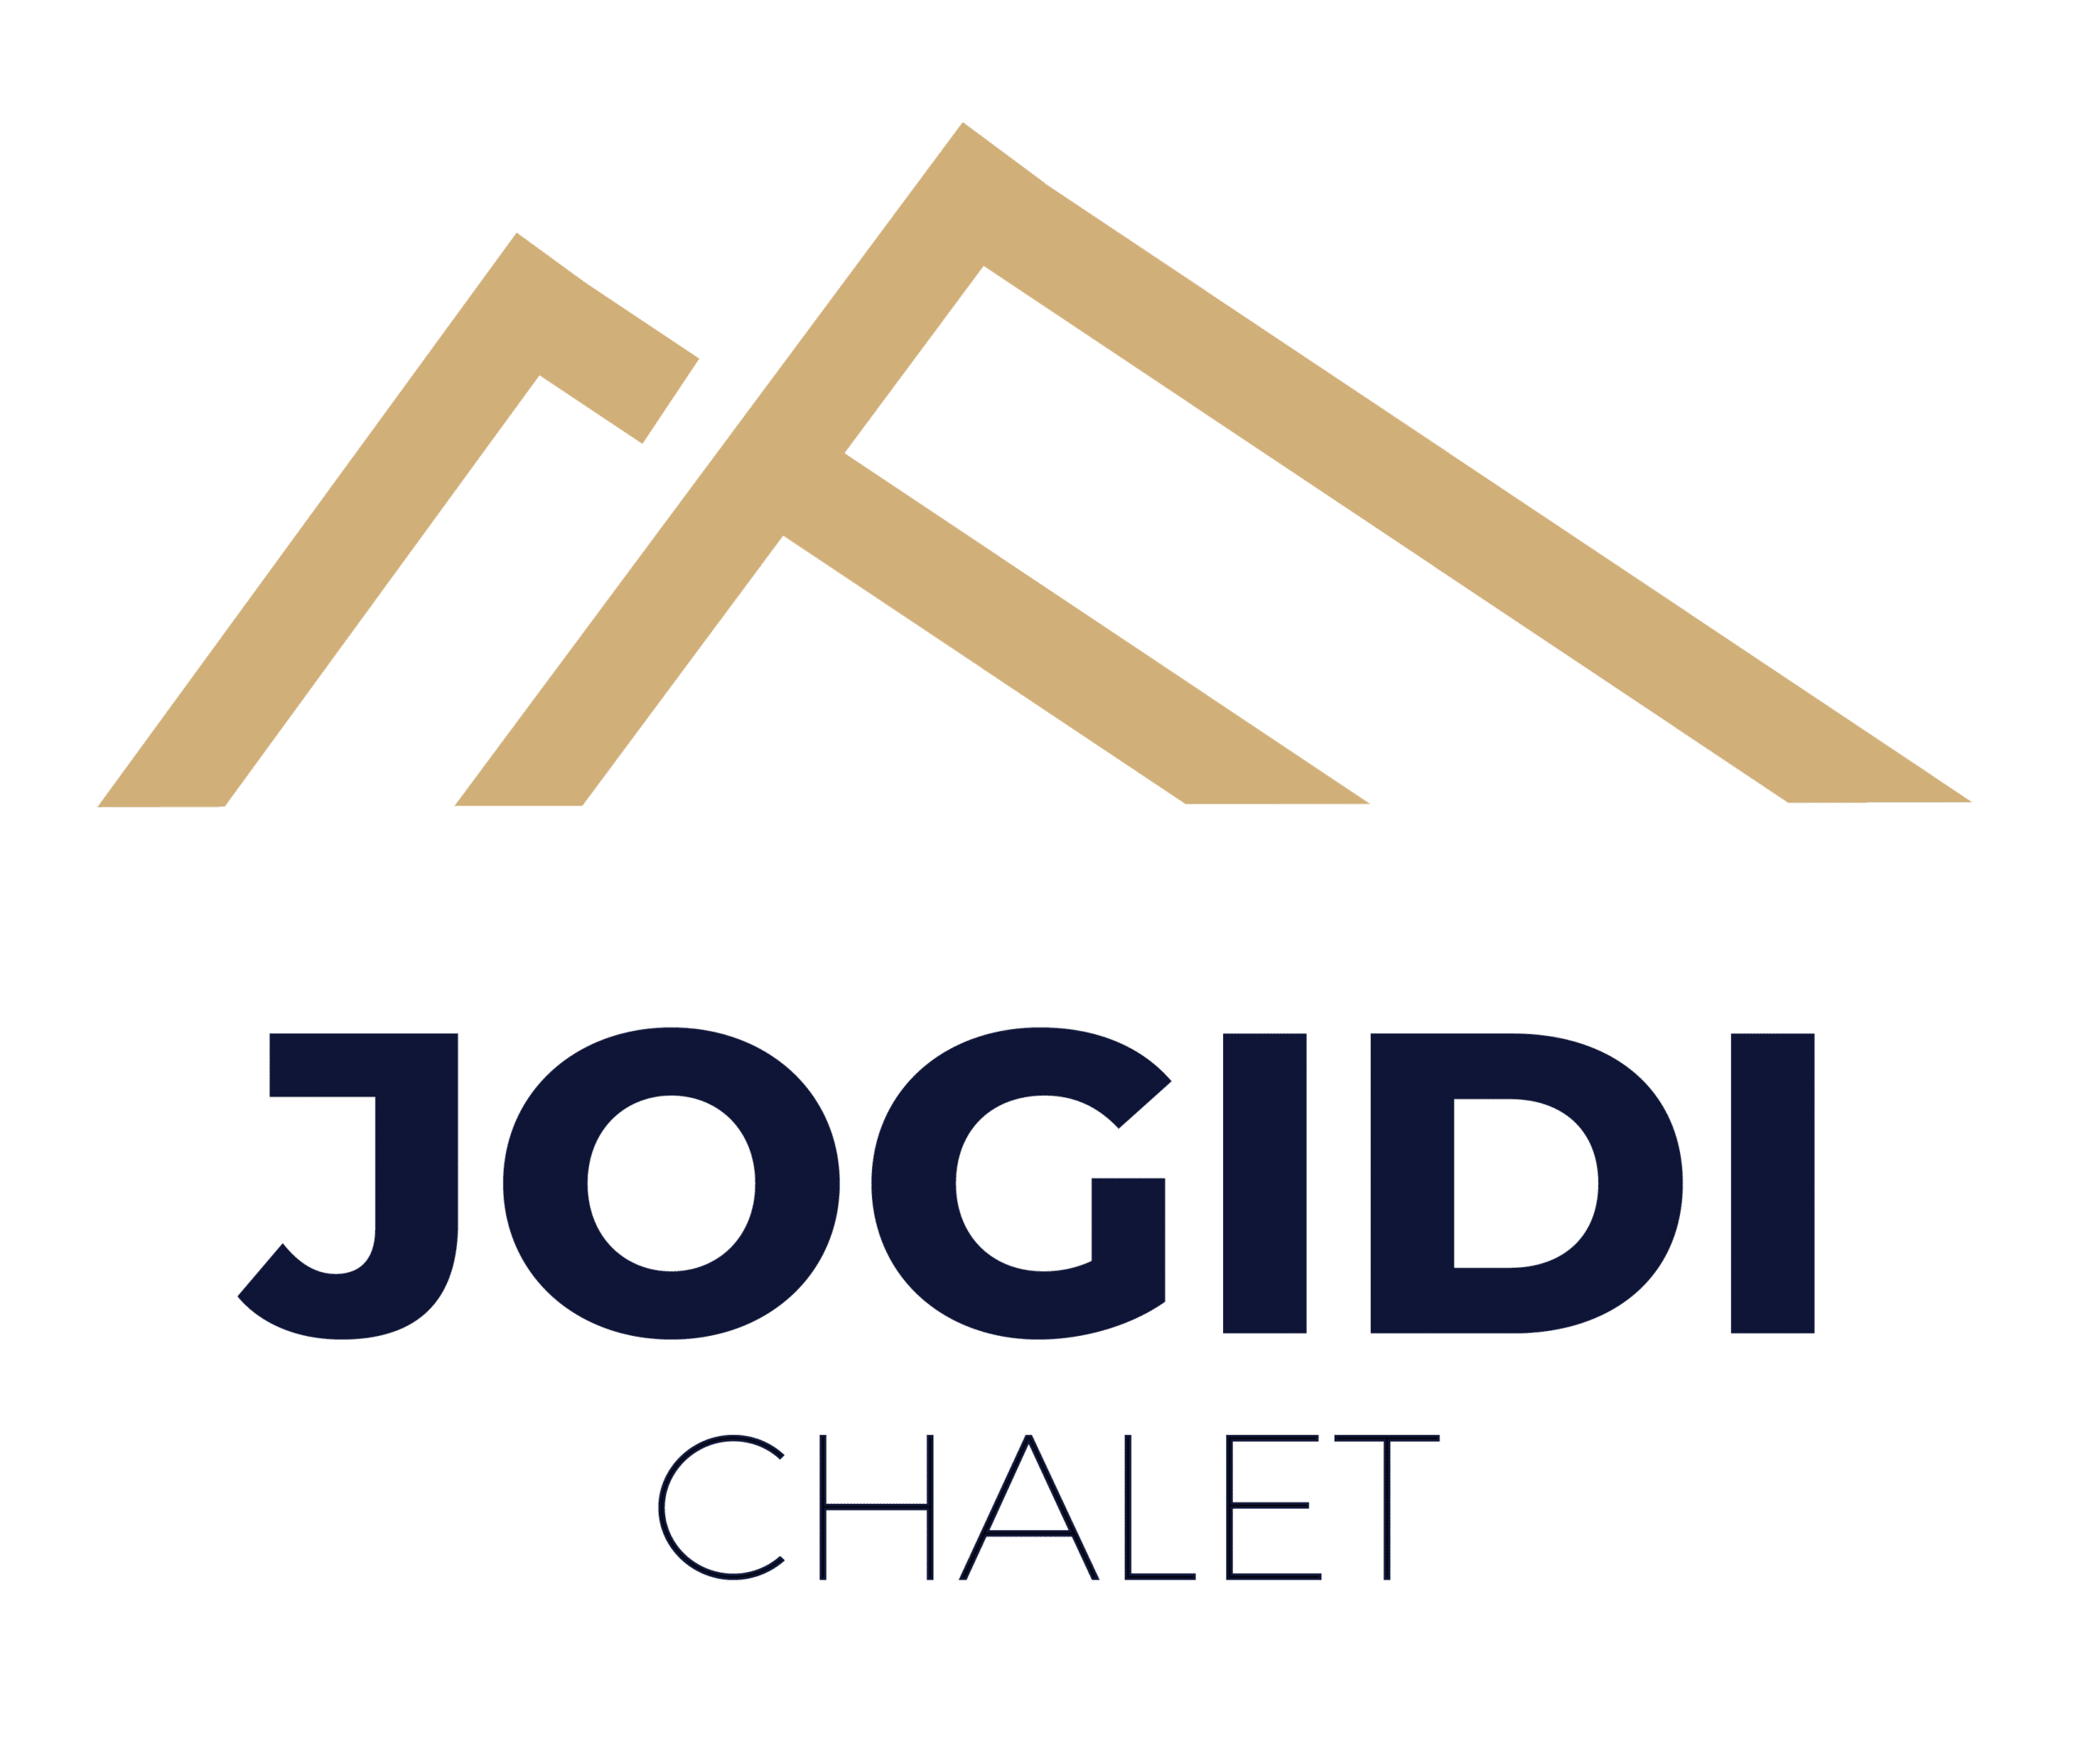 Chalet Jogidi - Saint Sorlin d'Arves - Les Sybelles